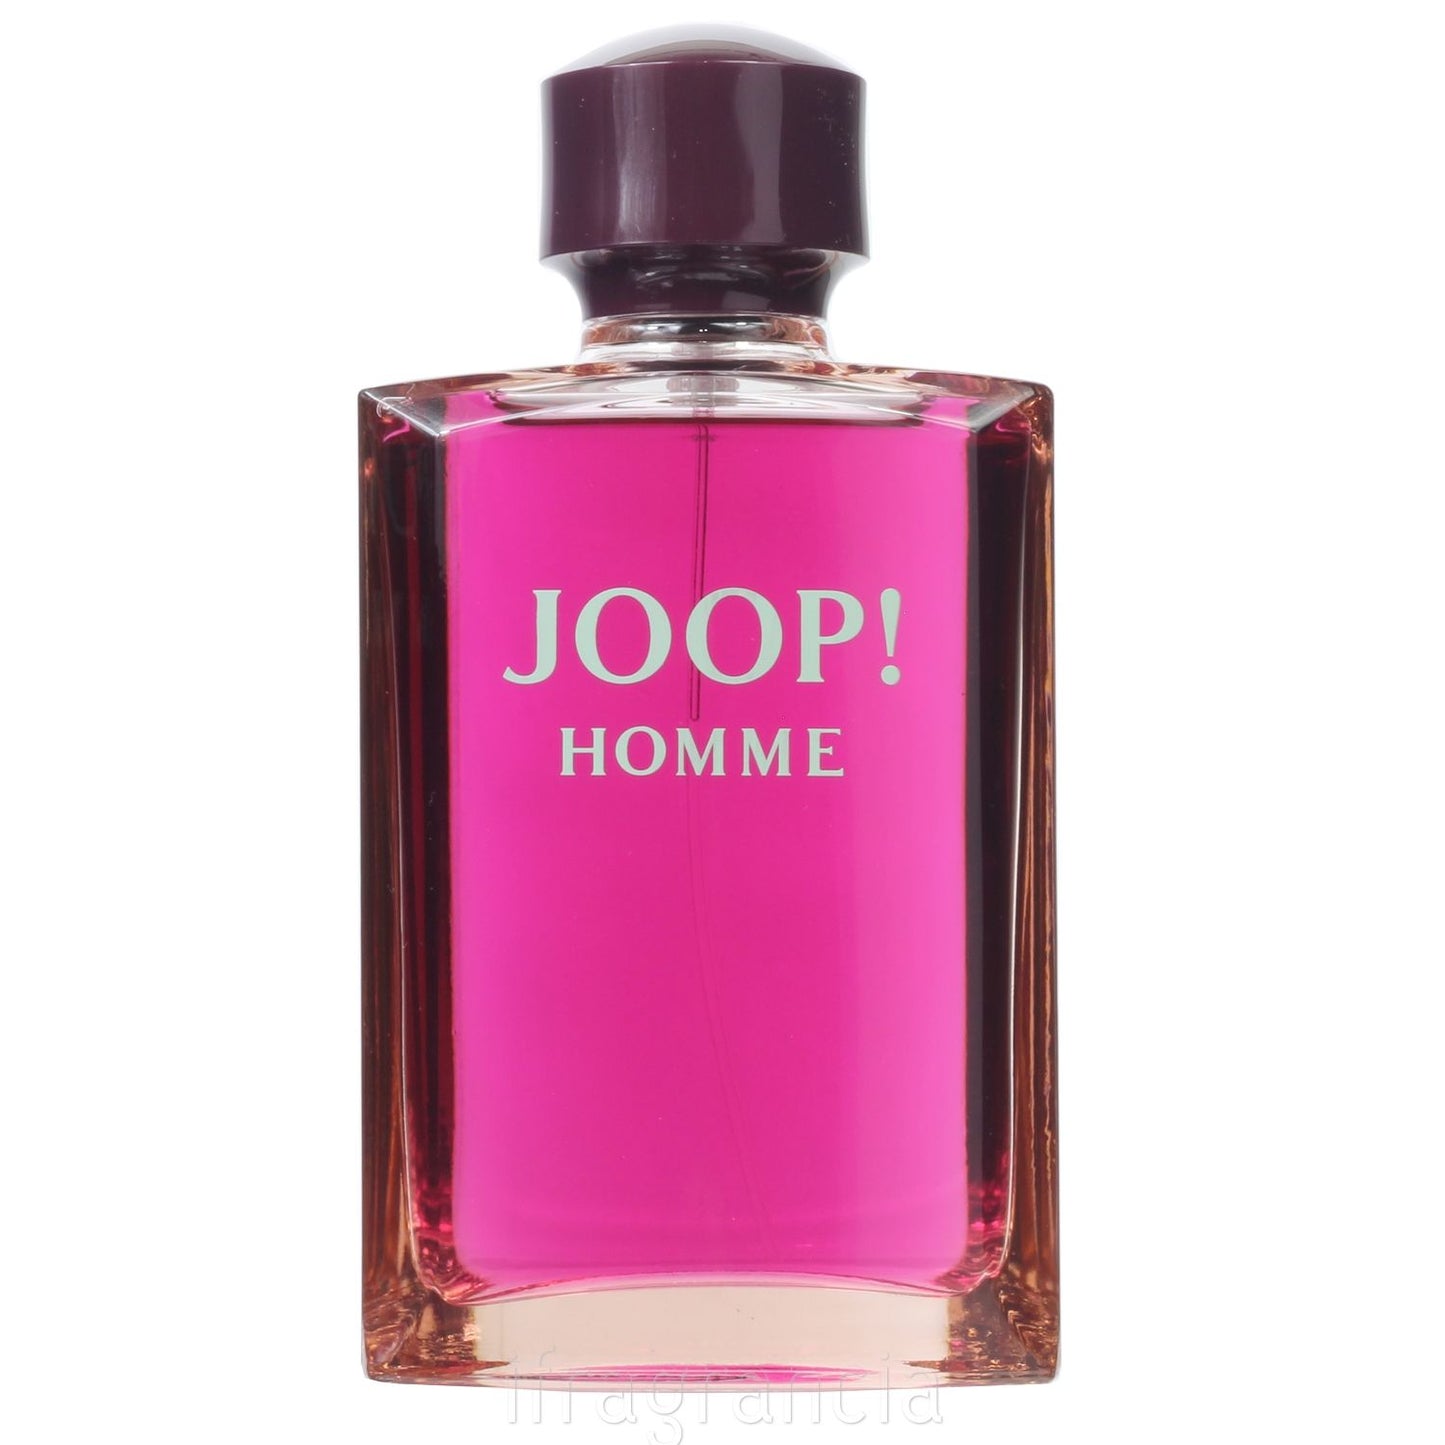 Joop - Homme EDT 200ml